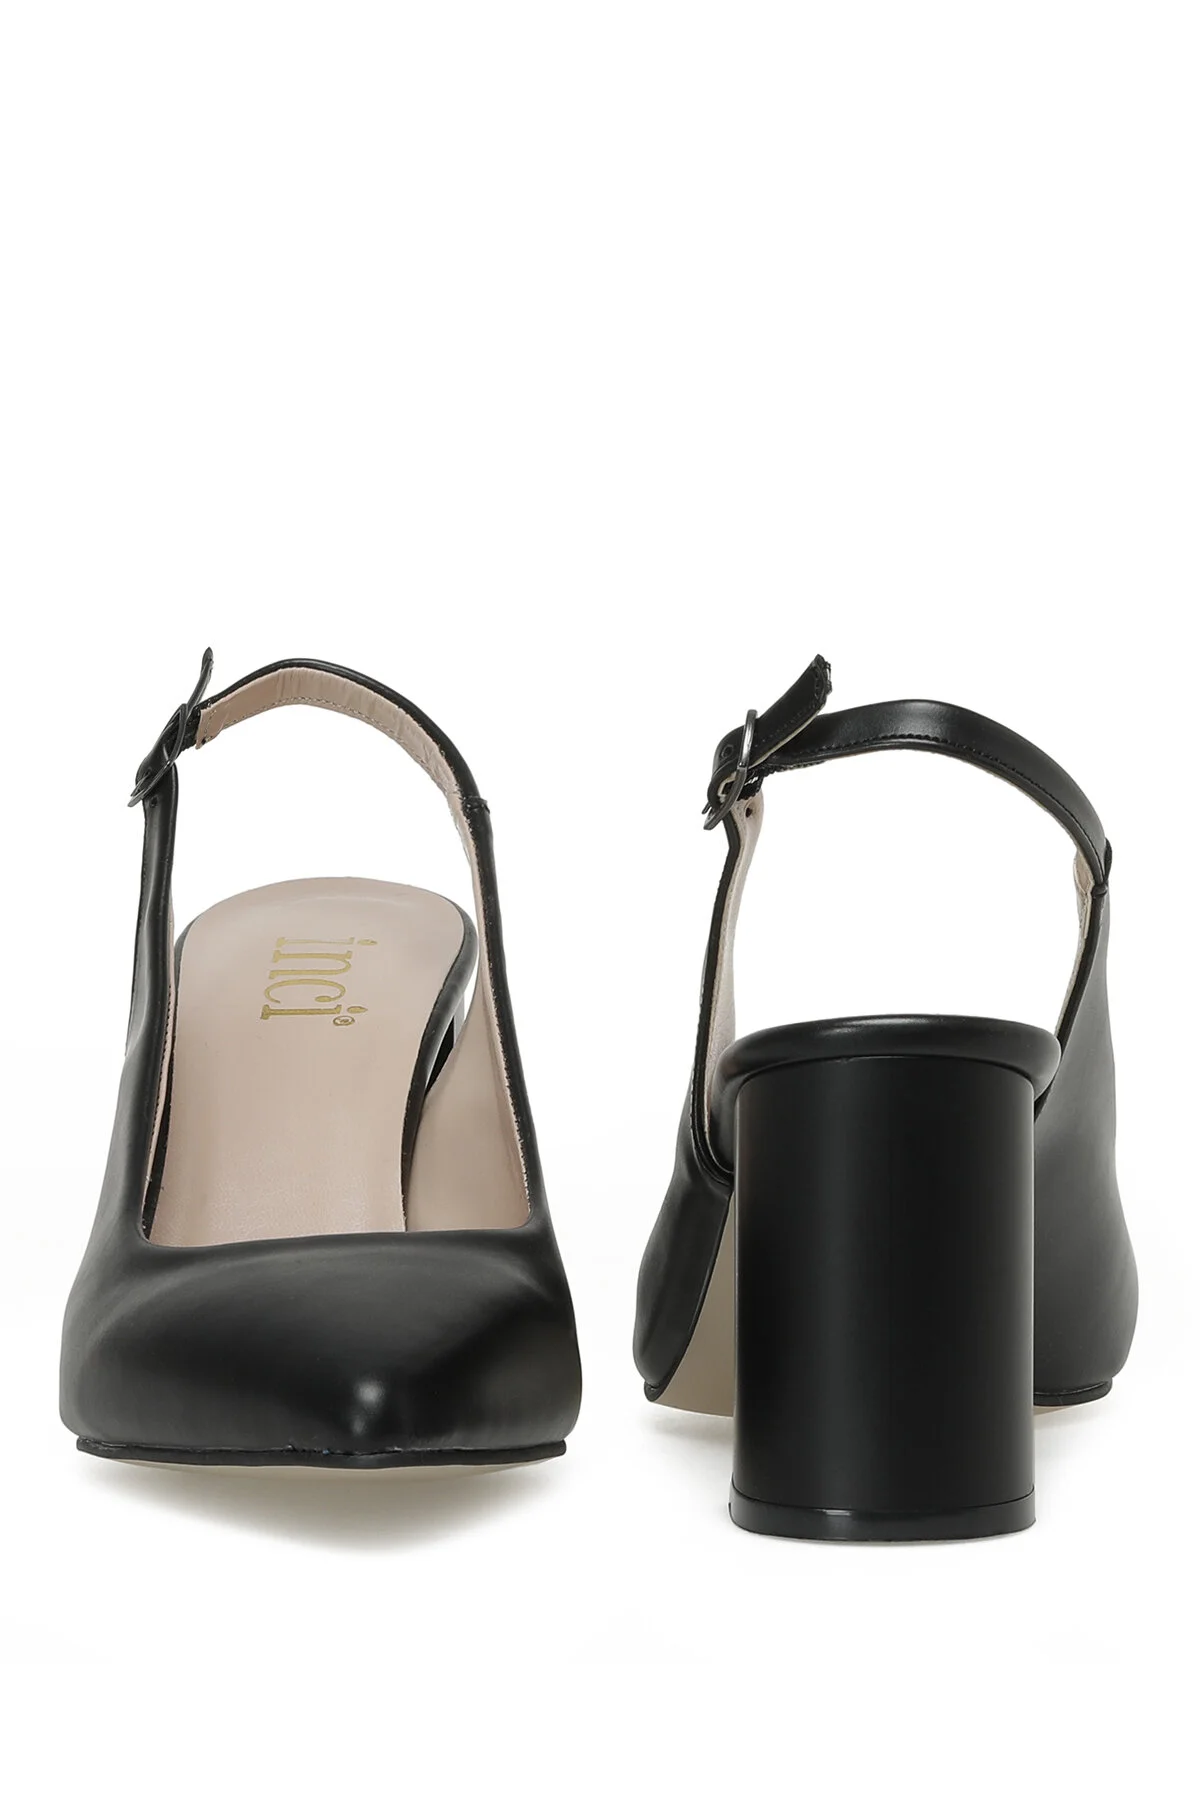 TESSA 3FX Kadın Topuklu Ayakkabı-Siyah - Thumbnail